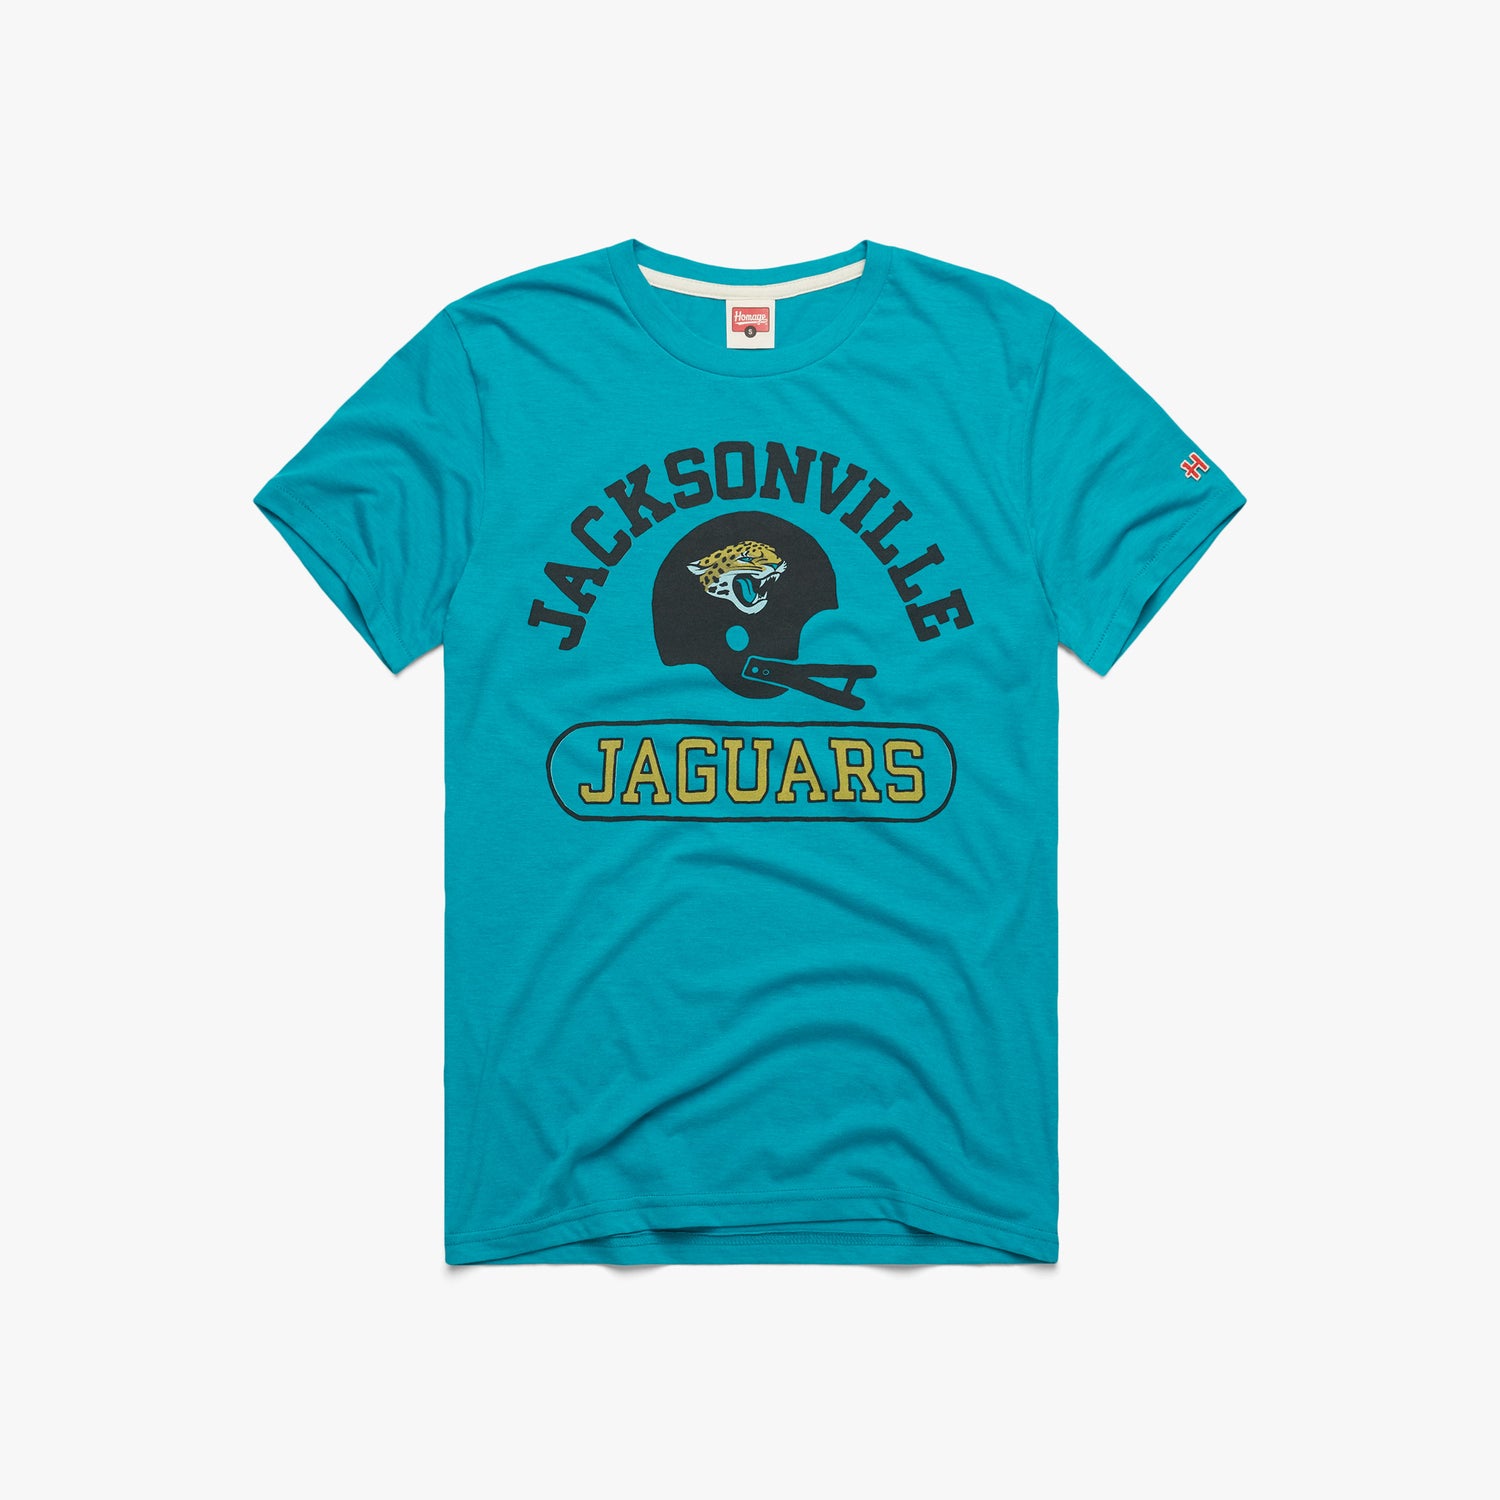 44 Jacksonville Jaguars Fashion, Style, Fan Gear ideas